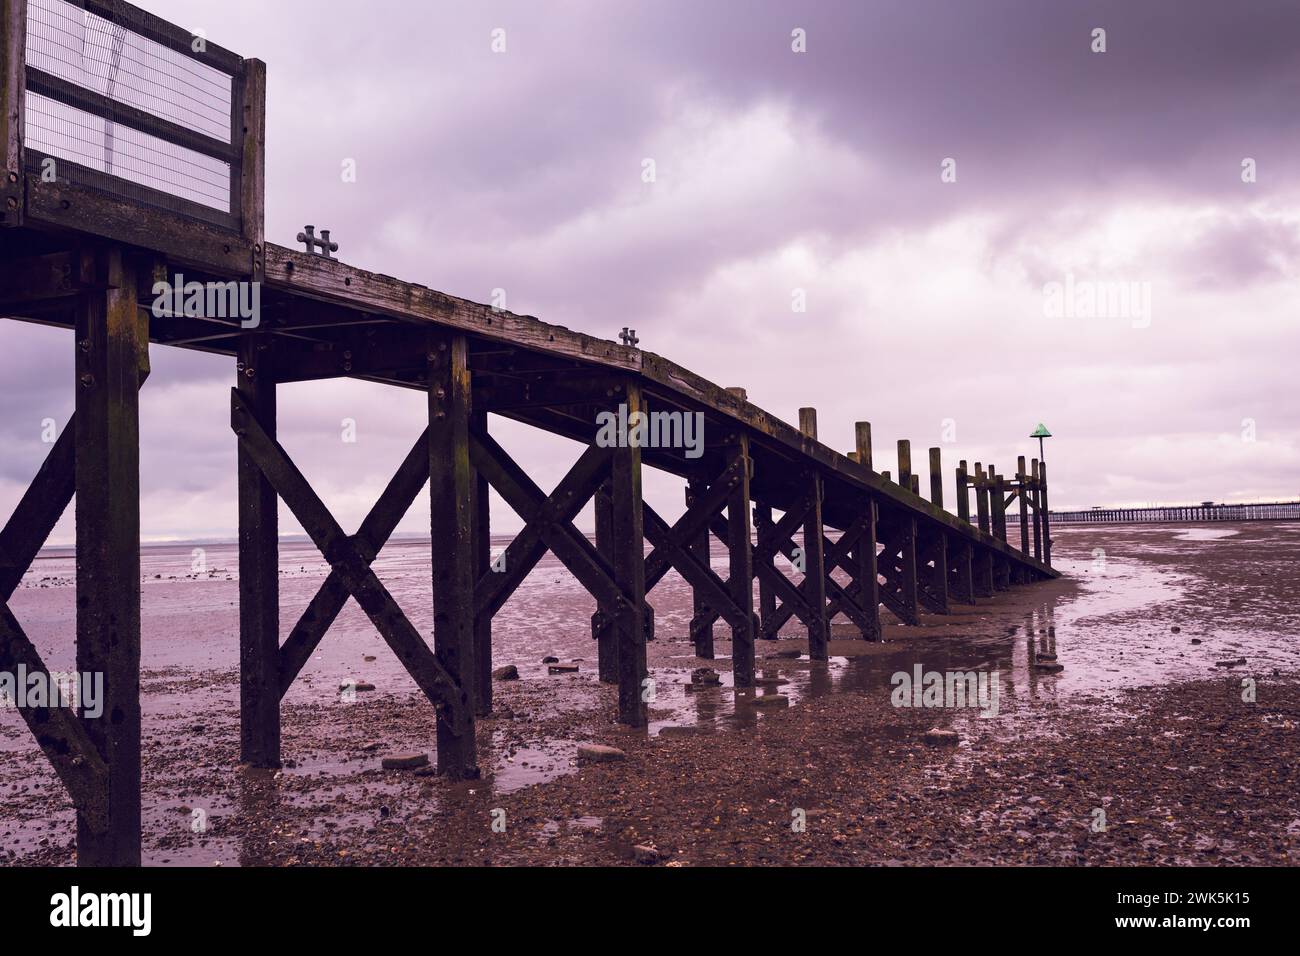 Paysages de voyage cinématographique côtier vue d'une cructure en bois à marée basse le long de l'estuaire de la Tamise. Violet, Bronze, couleurs cuivre. Banque D'Images